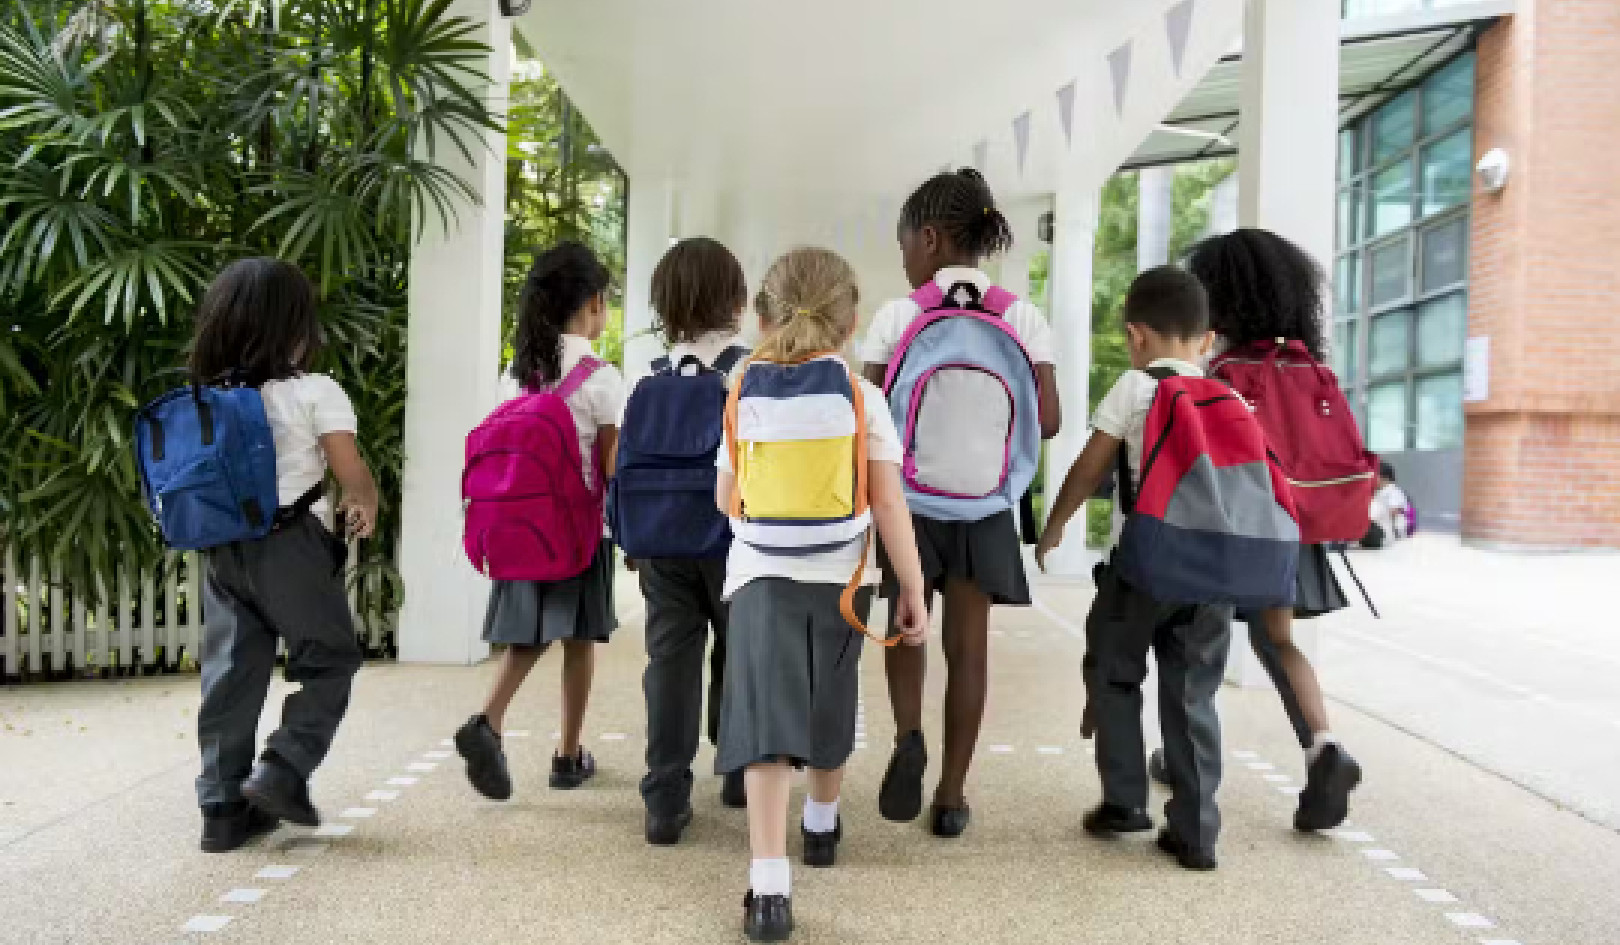 Должны ли рожденные летом дети идти в школу позже?